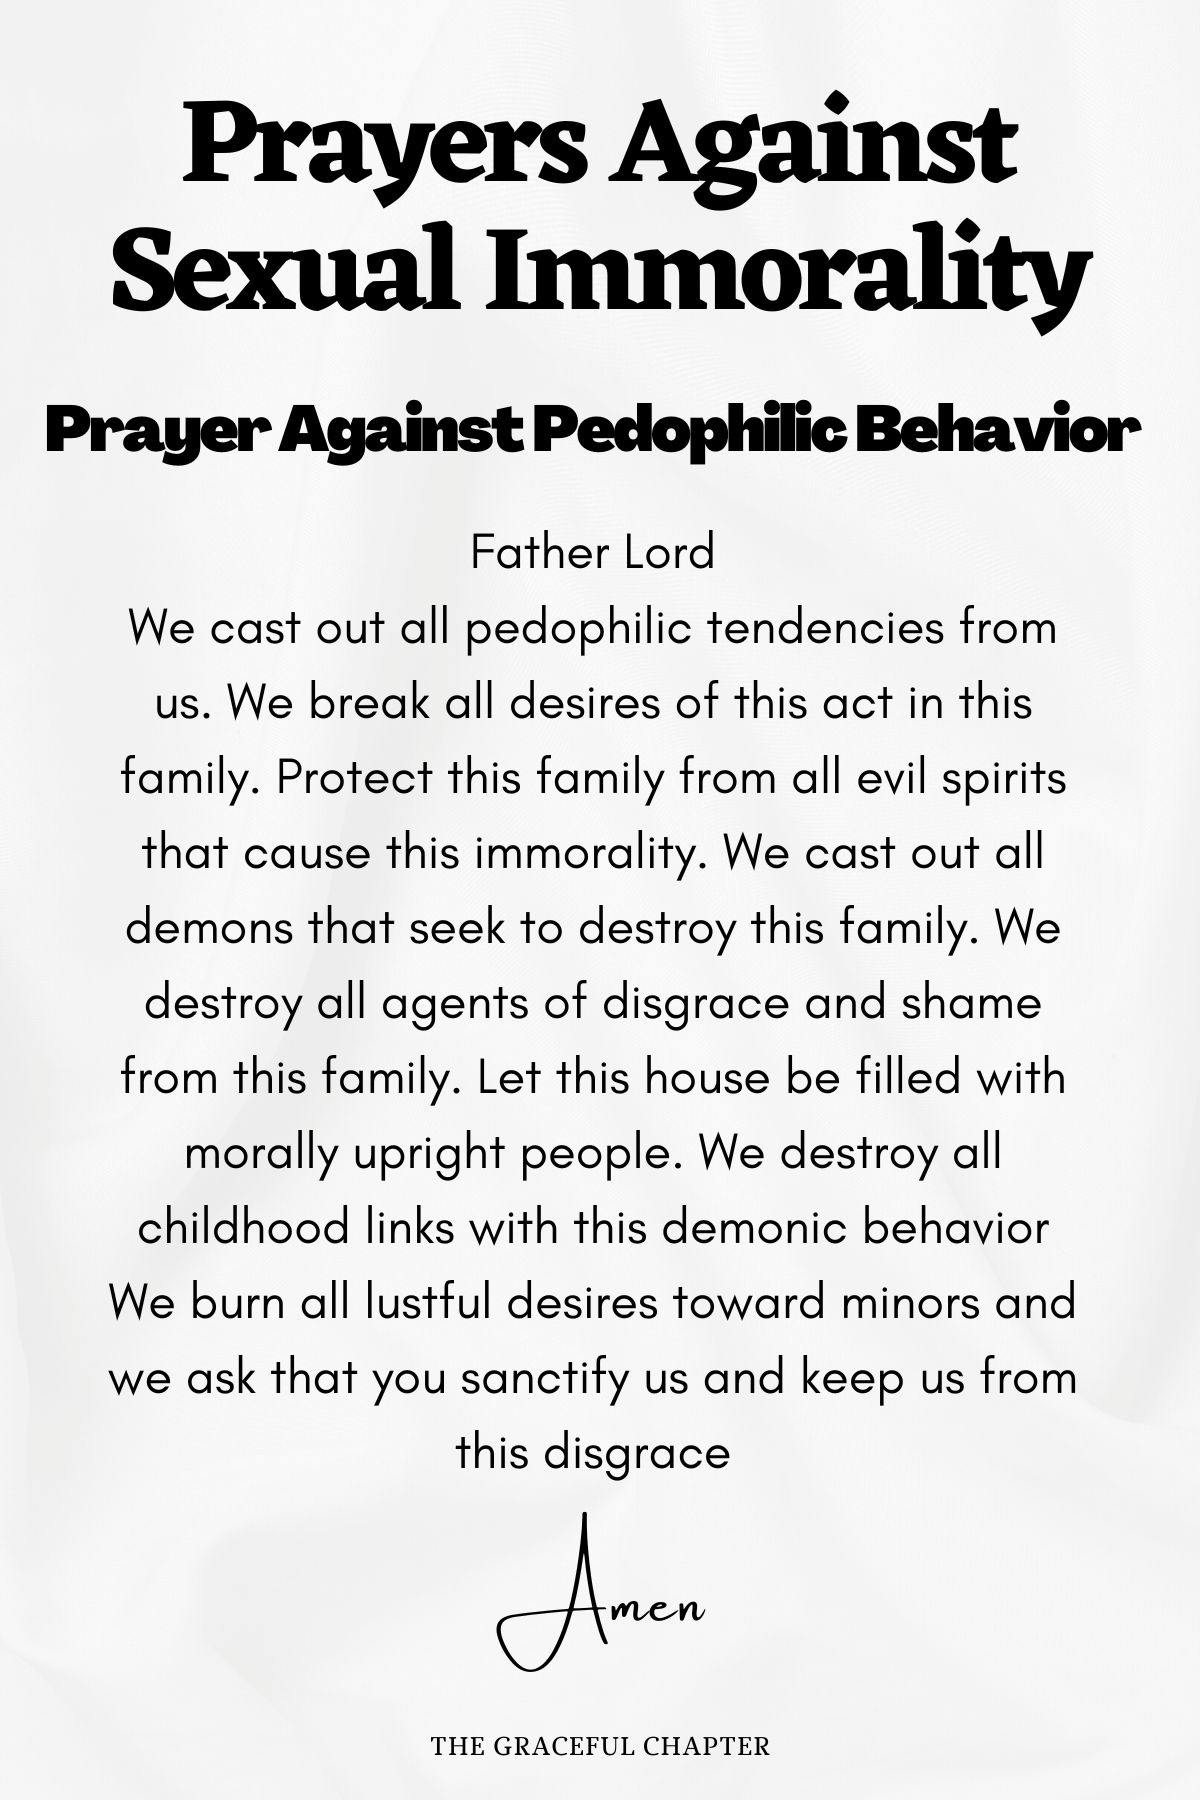 Prayer against pedophilic behavior